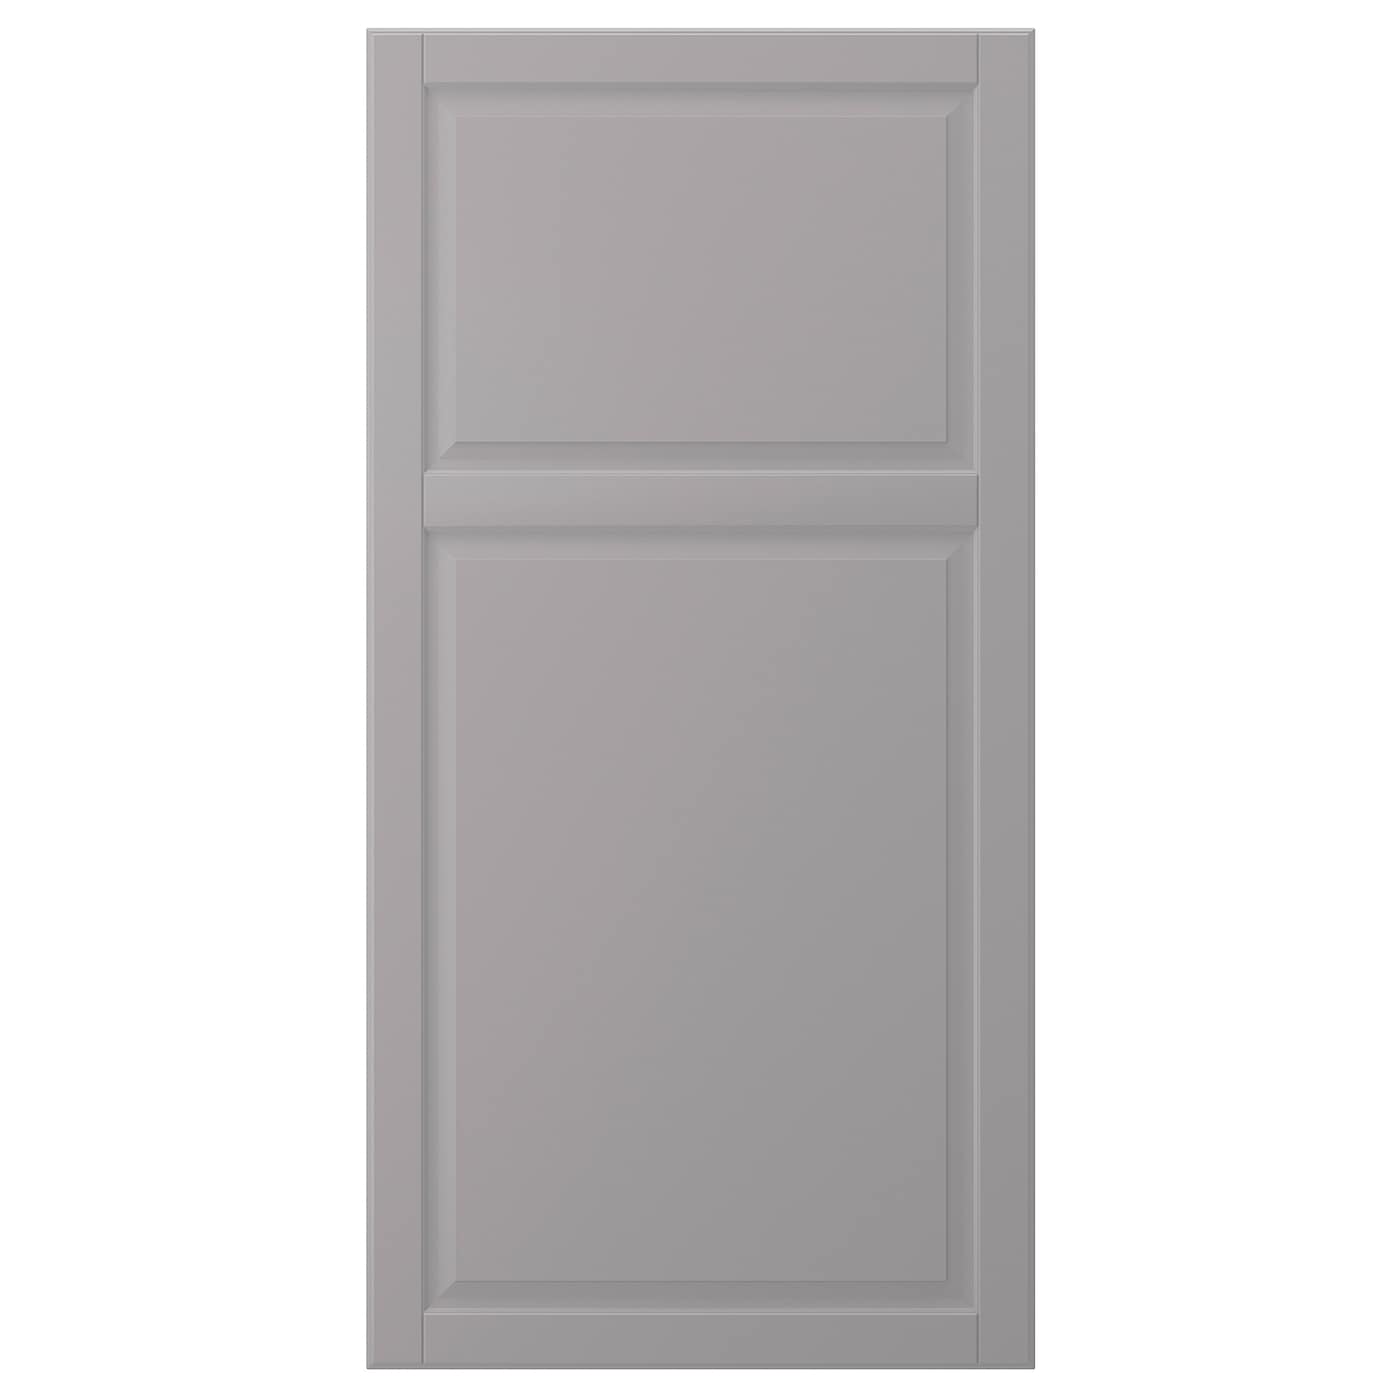 Дверца - IKEA BODBYN, 120х60 см, серый, БУДБИН ИКЕА